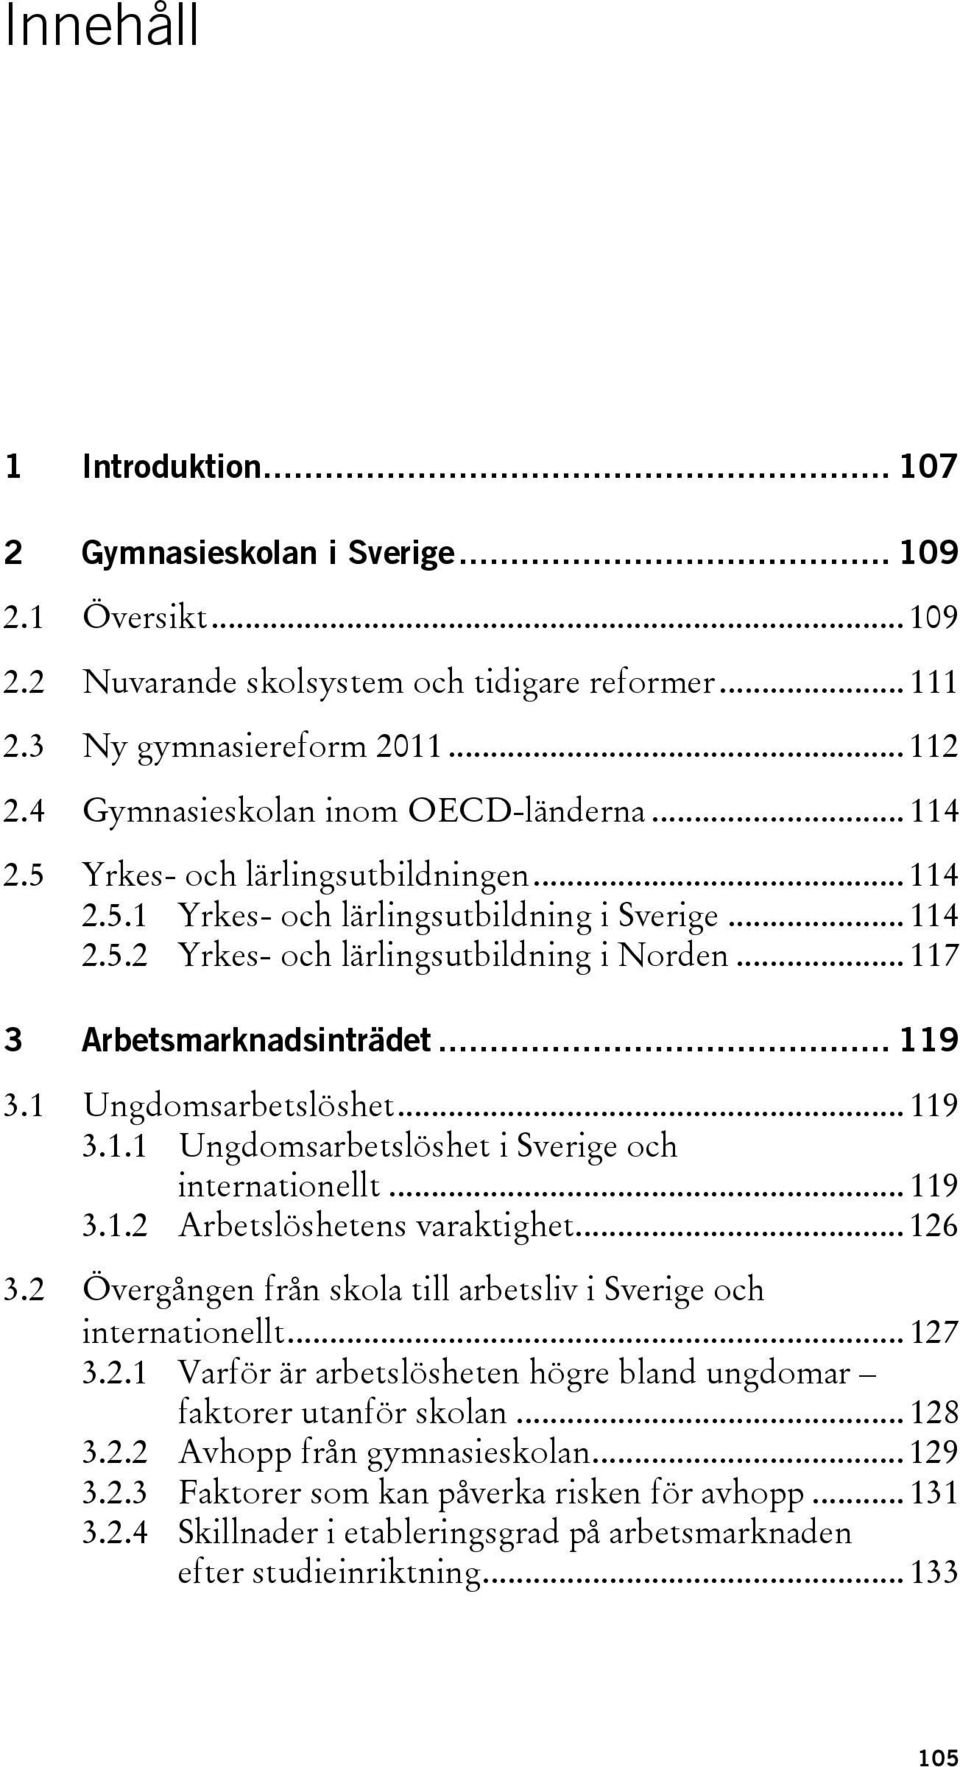 .. 117 3 Arbetsmarknadsinträdet... 119 3.1 Ungdomsarbetslöshet... 119 3.1.1 Ungdomsarbetslöshet i Sverige och internationellt... 119 3.1.2 Arbetslöshetens varaktighet... 126 3.